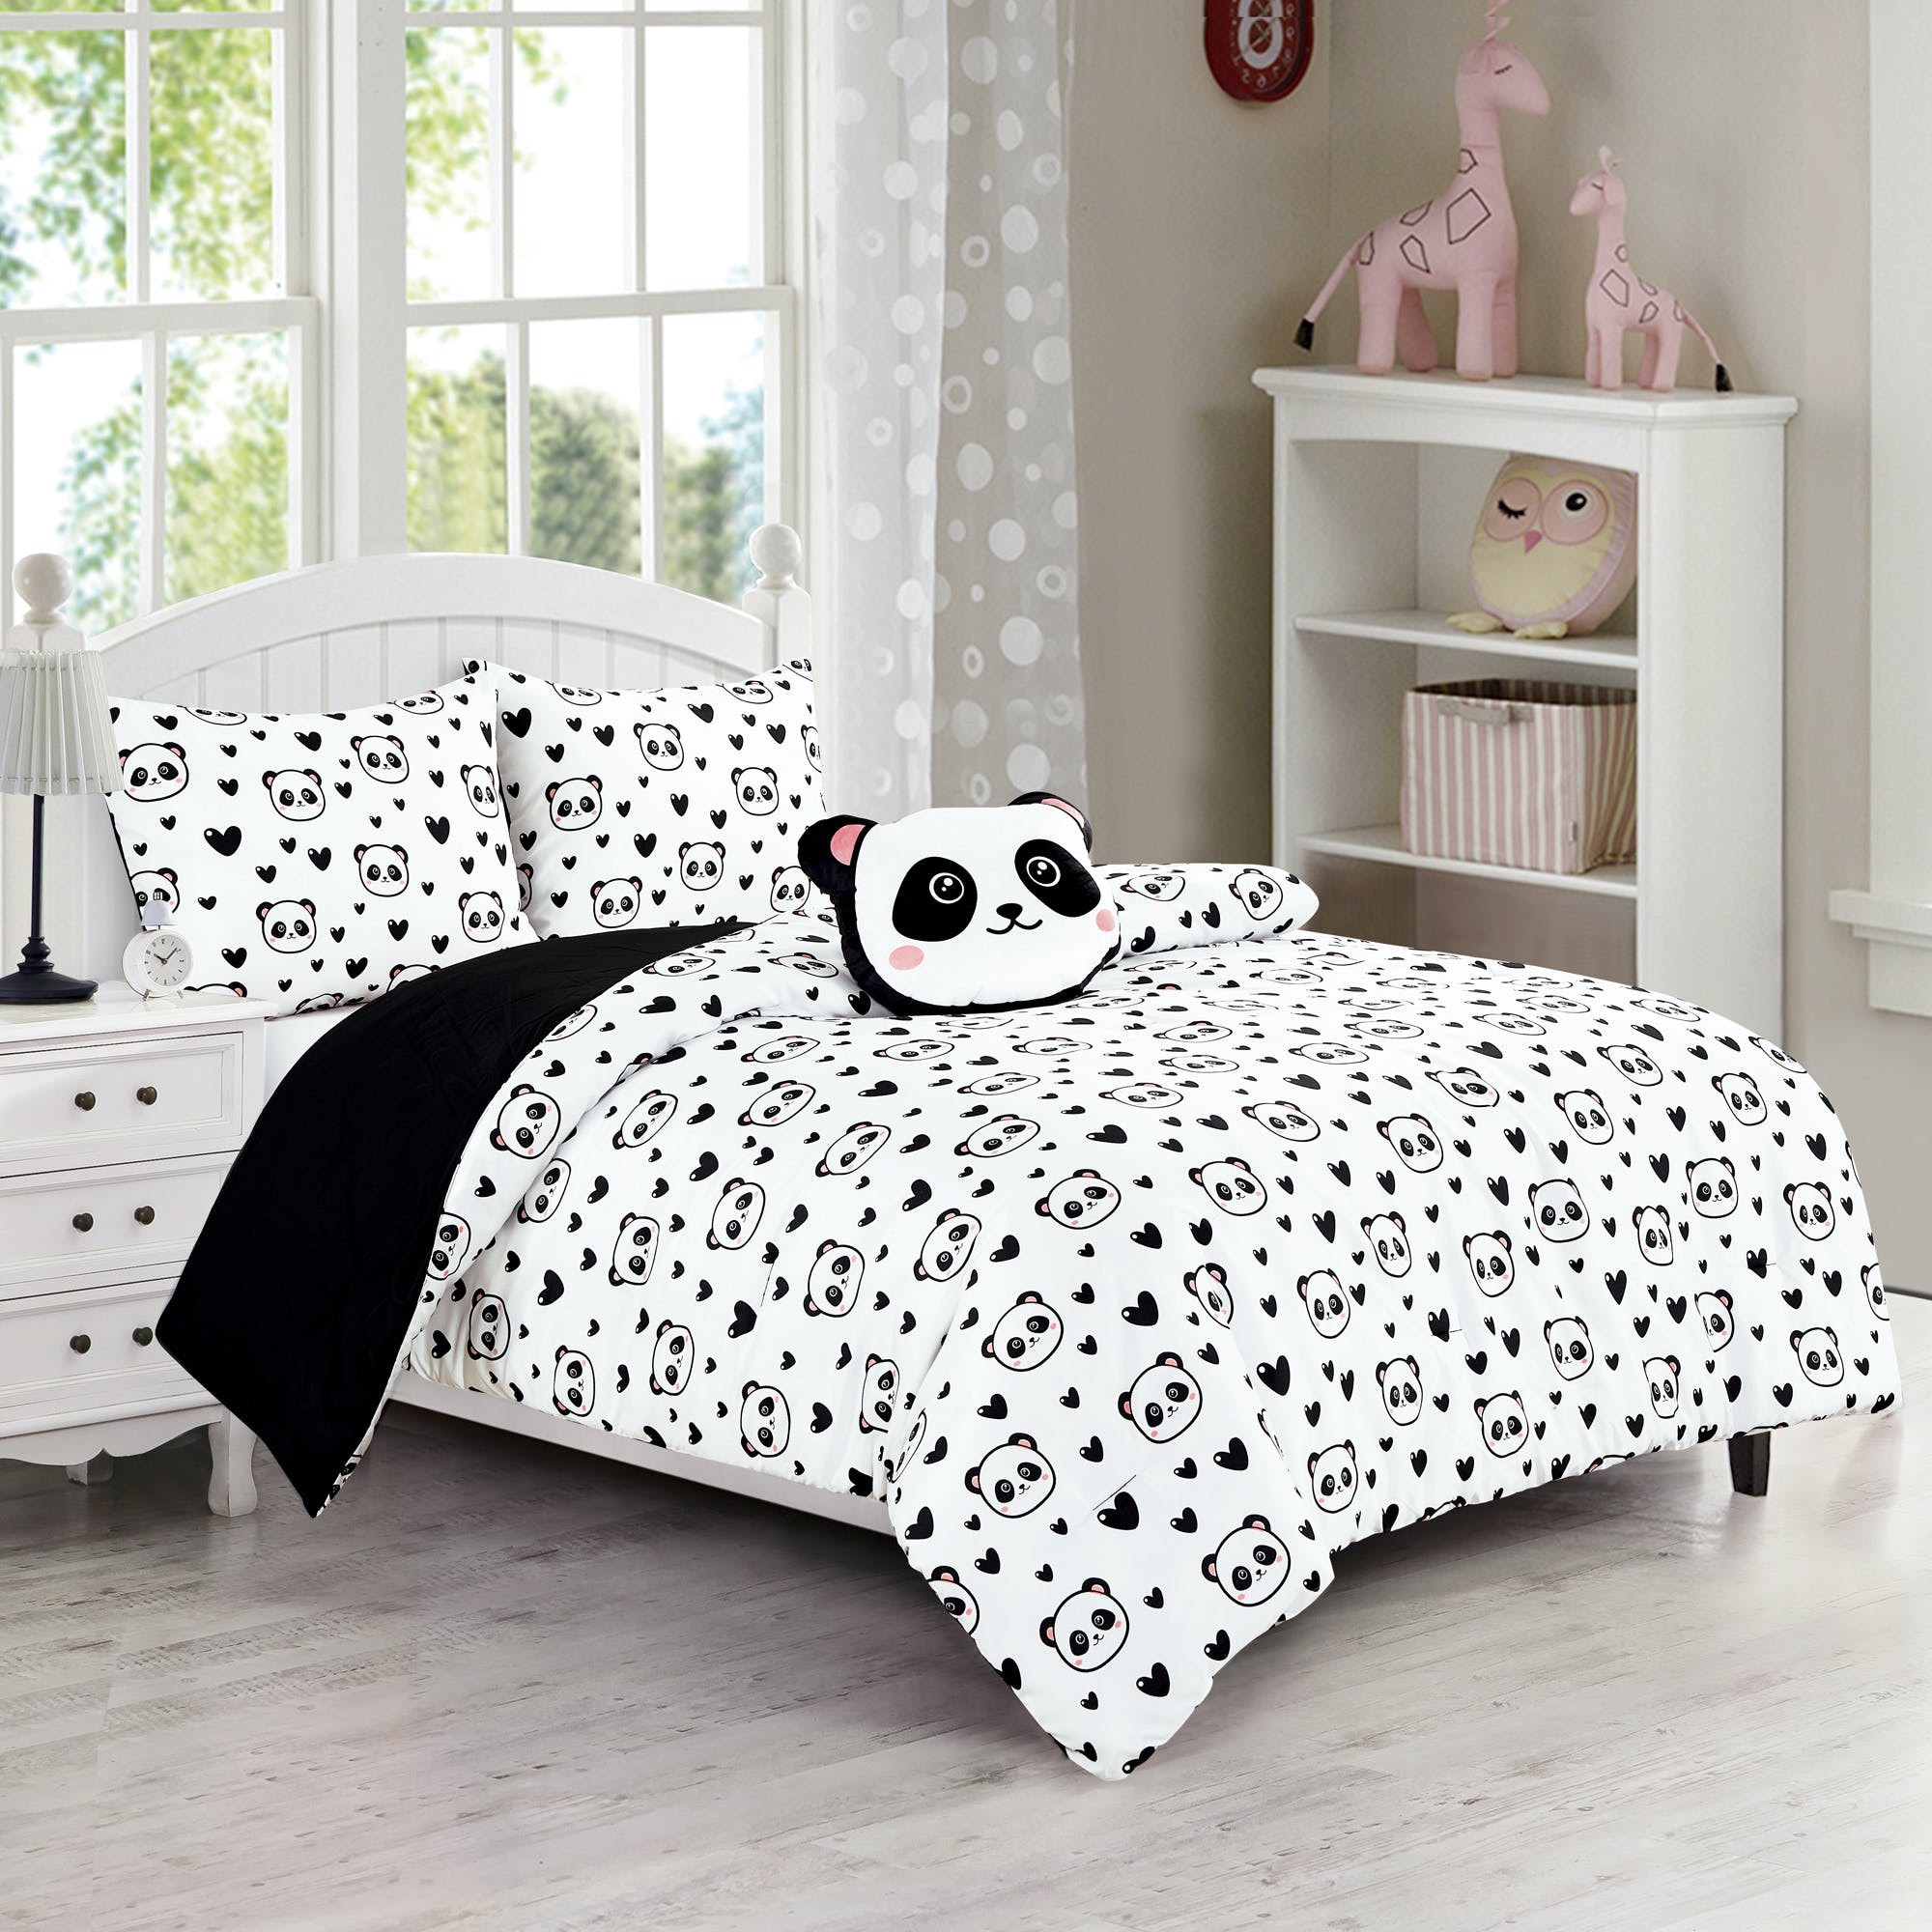 Panda Comforter Set - Full/Queen